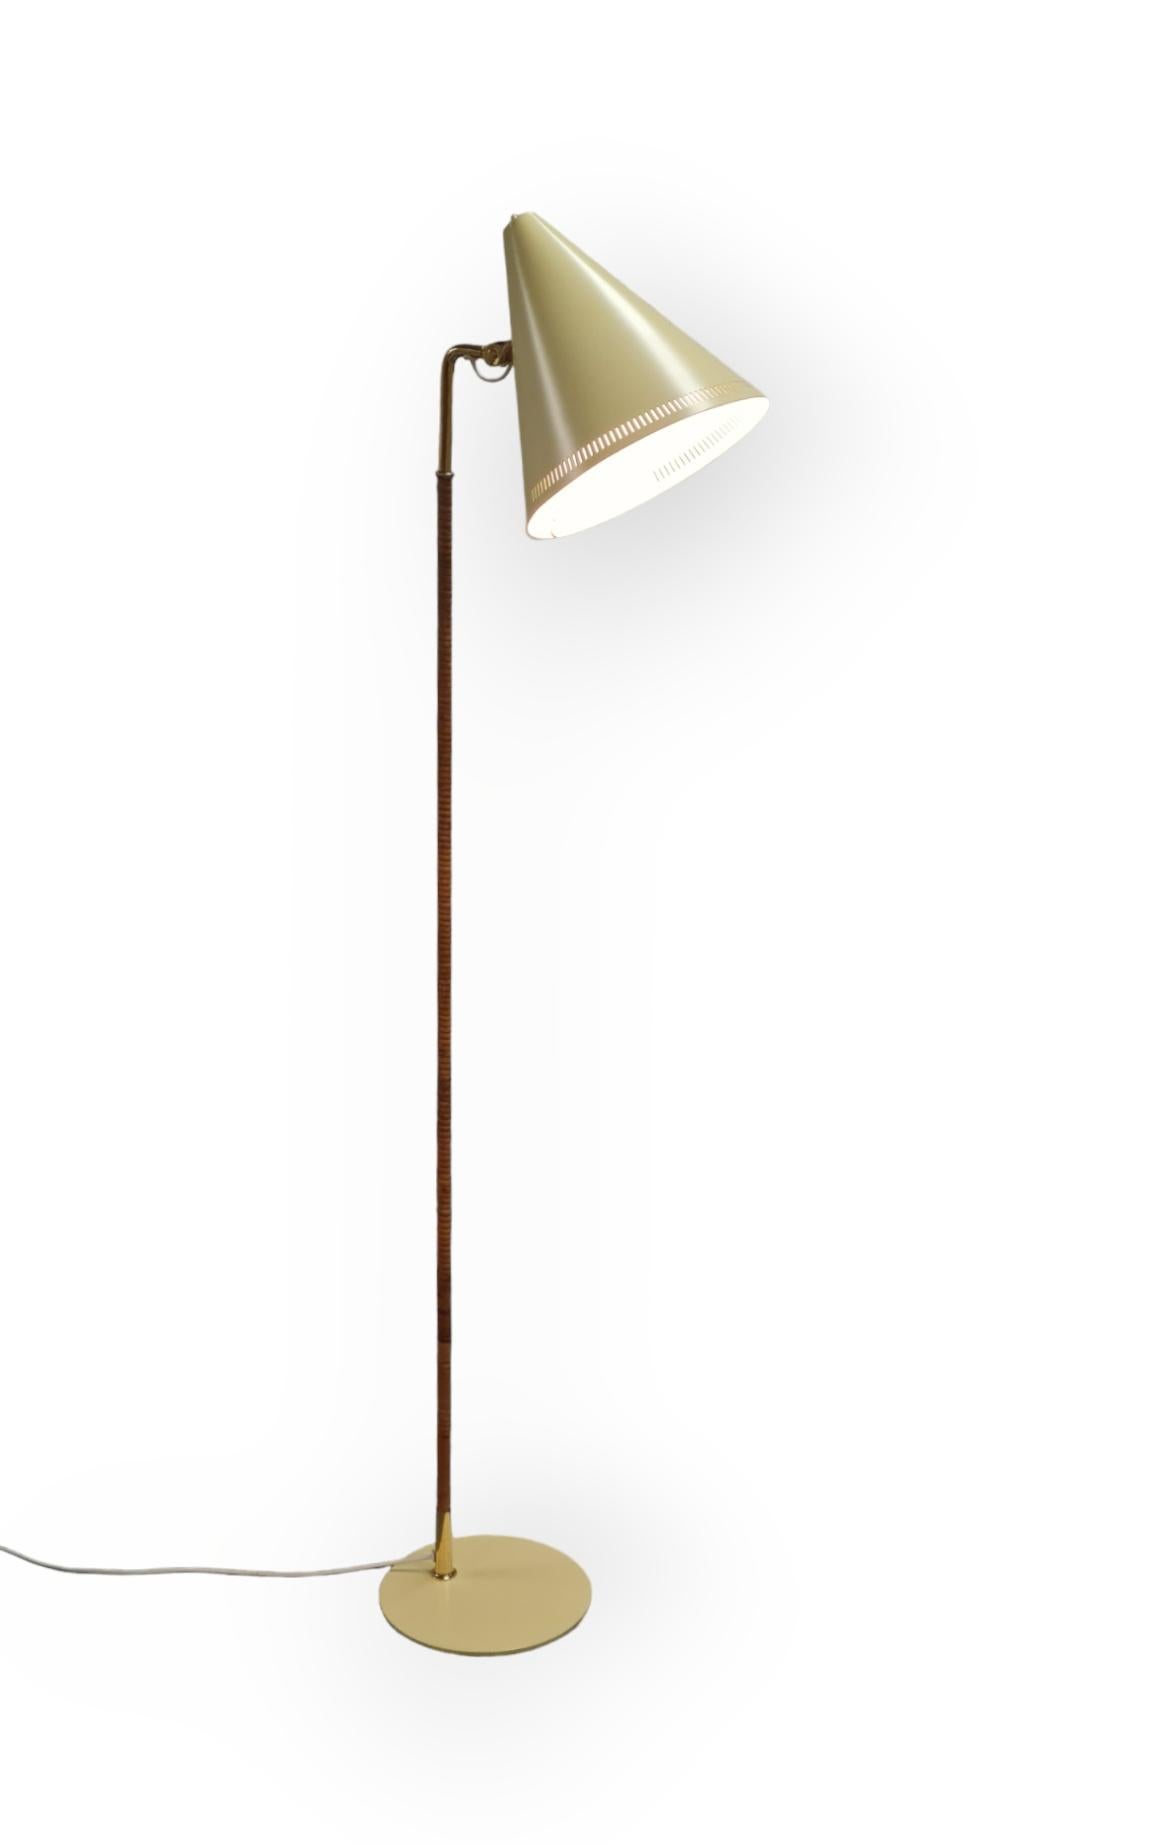 Lampadaire emblématique modèle k10-10 conçu par Paavo Tynell pour Idman dans les années 1950. La lampe a été repeinte en jaune, en remplacement des versions noires et blanches qui sont les couleurs les plus fréquentes. L'article est par ailleurs en